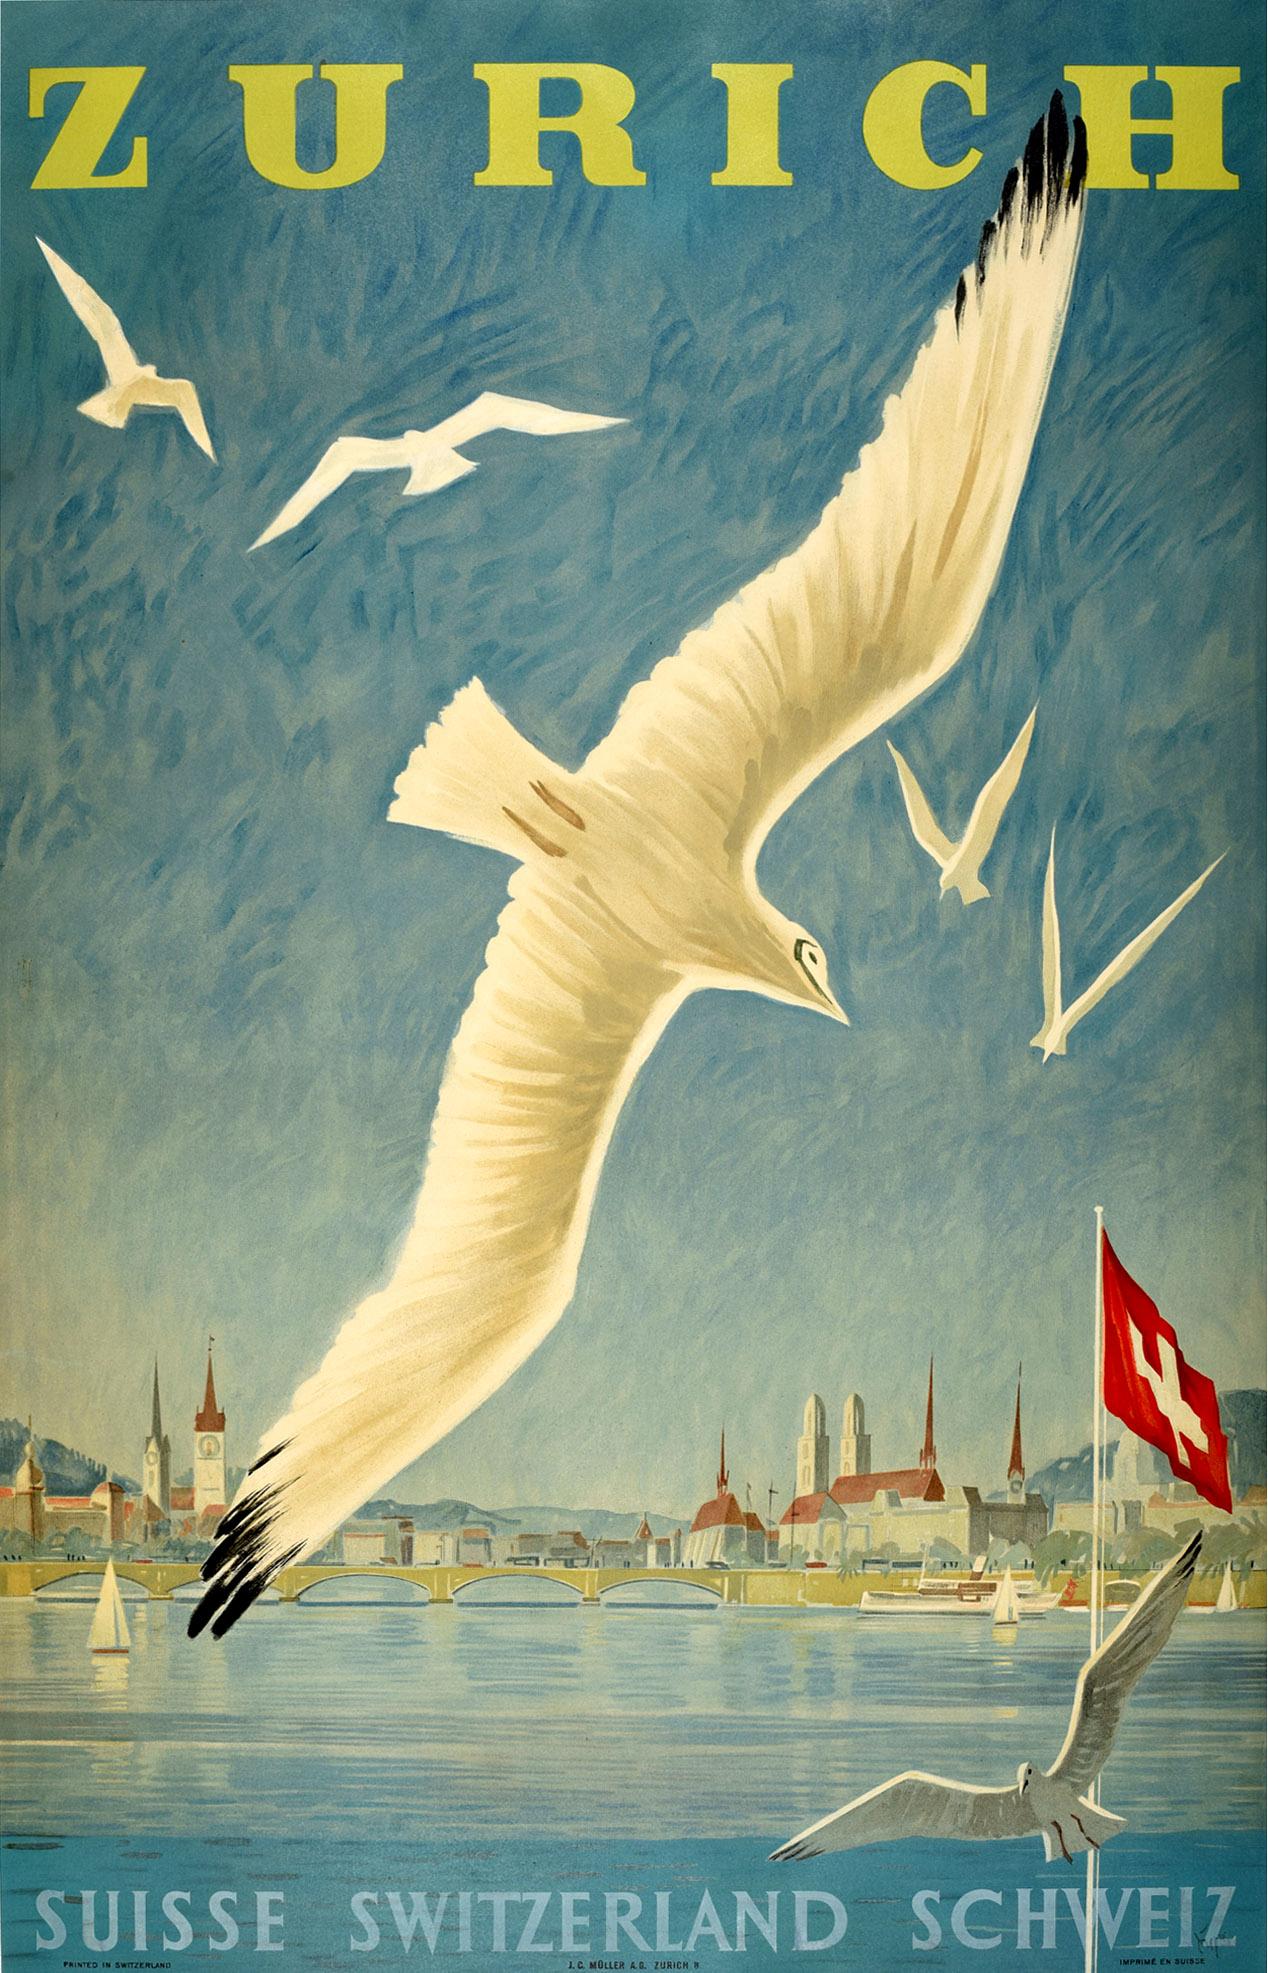 Alex Diggelmann Print - Original Vintage Poster Lake Zurich Switzerland Sailing Swiss Alps Travel Art